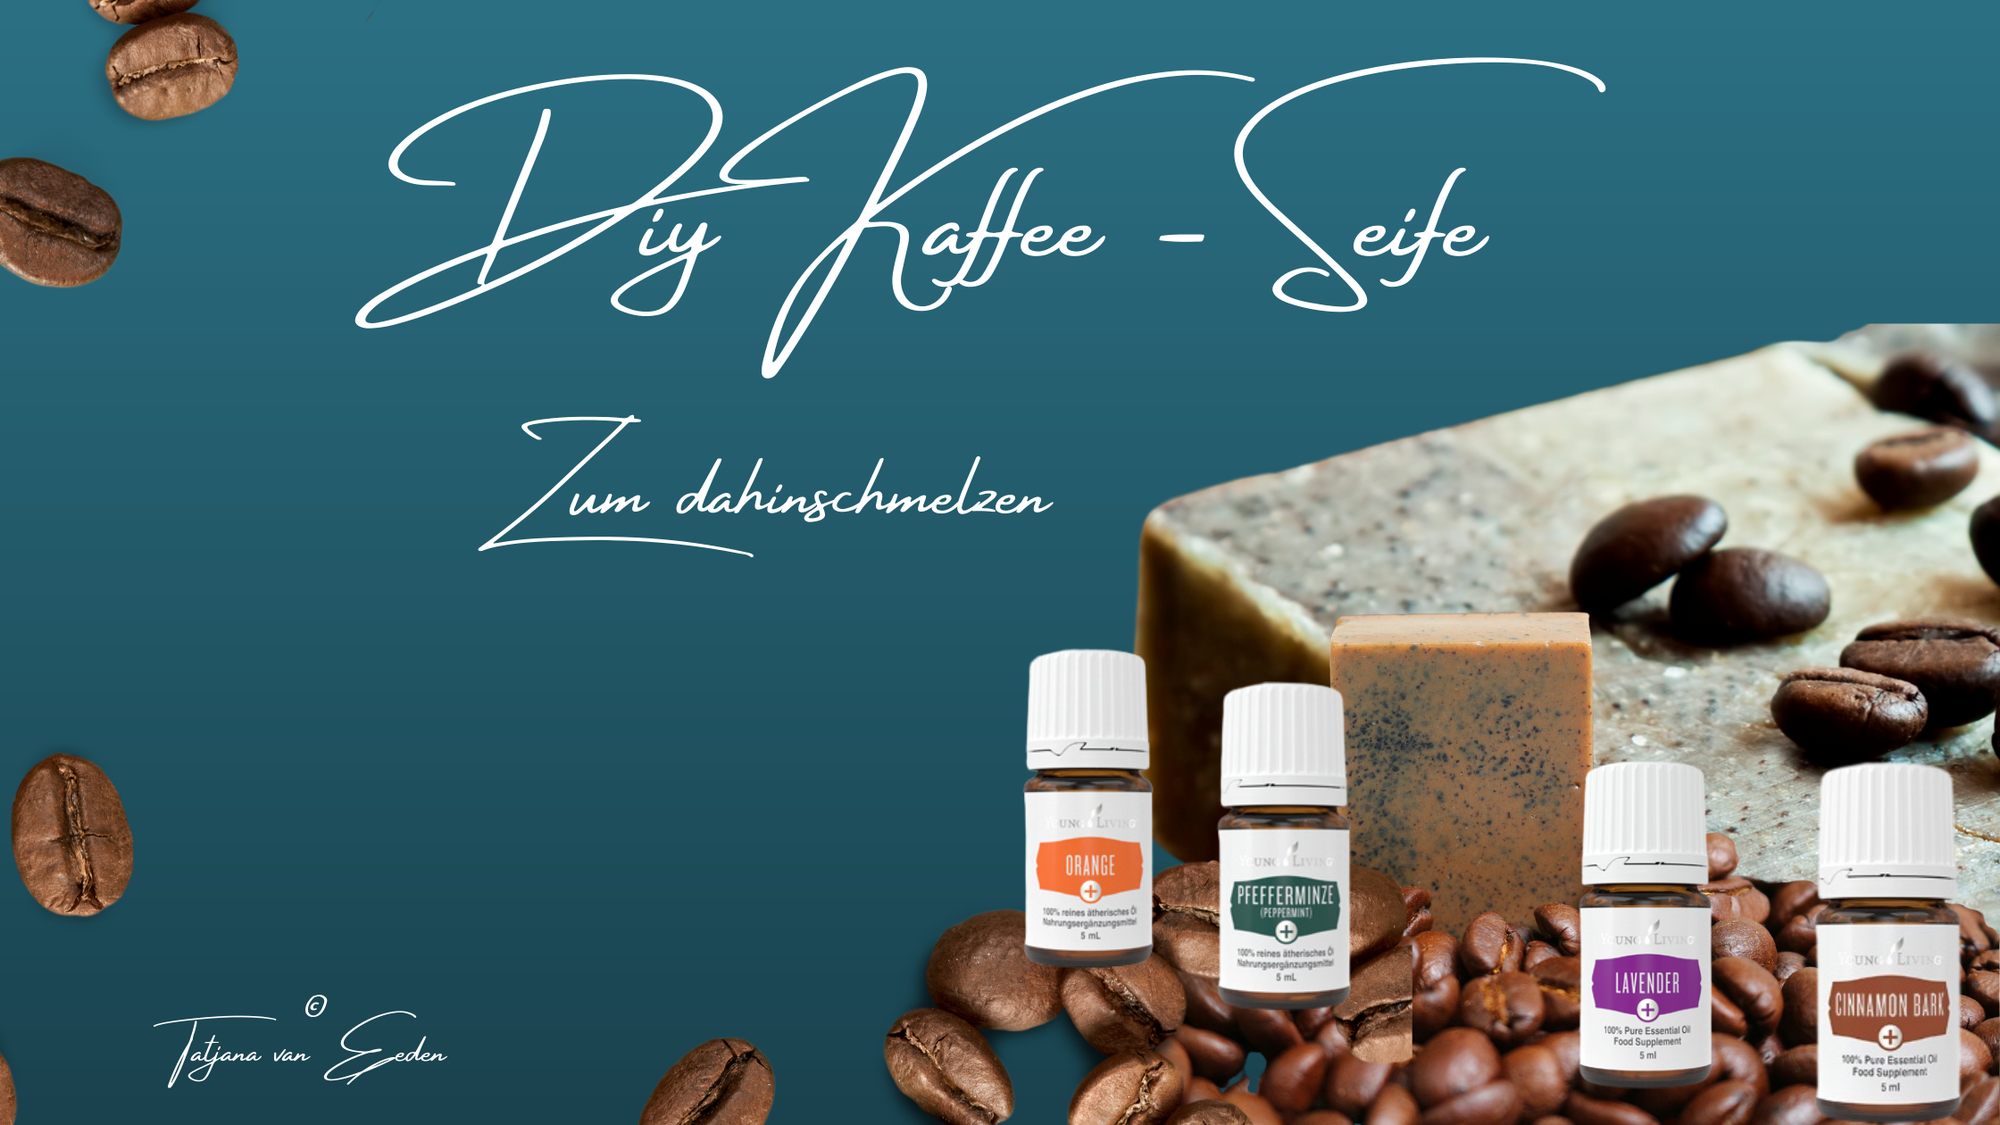 DiY Kaffee Seife - Peeling - Cellulite - mit der Kraft der Öle im TM5